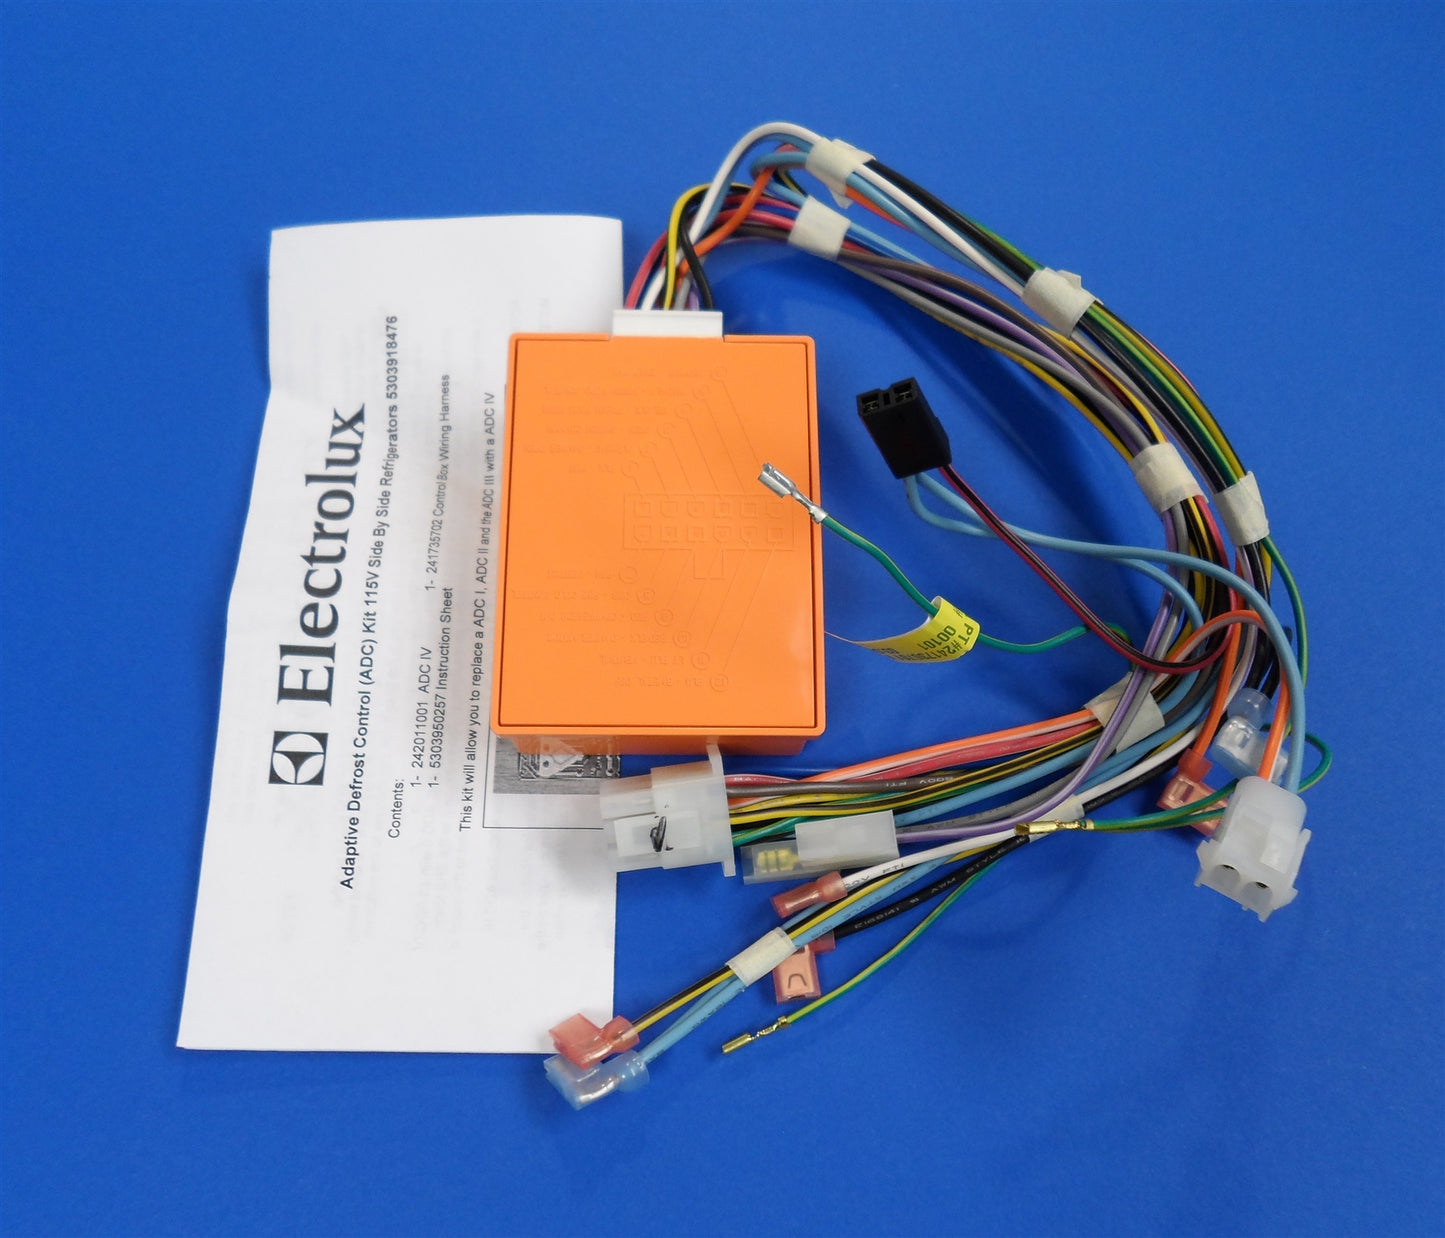 Electrolux - Desfrost Control kit for regrigertor